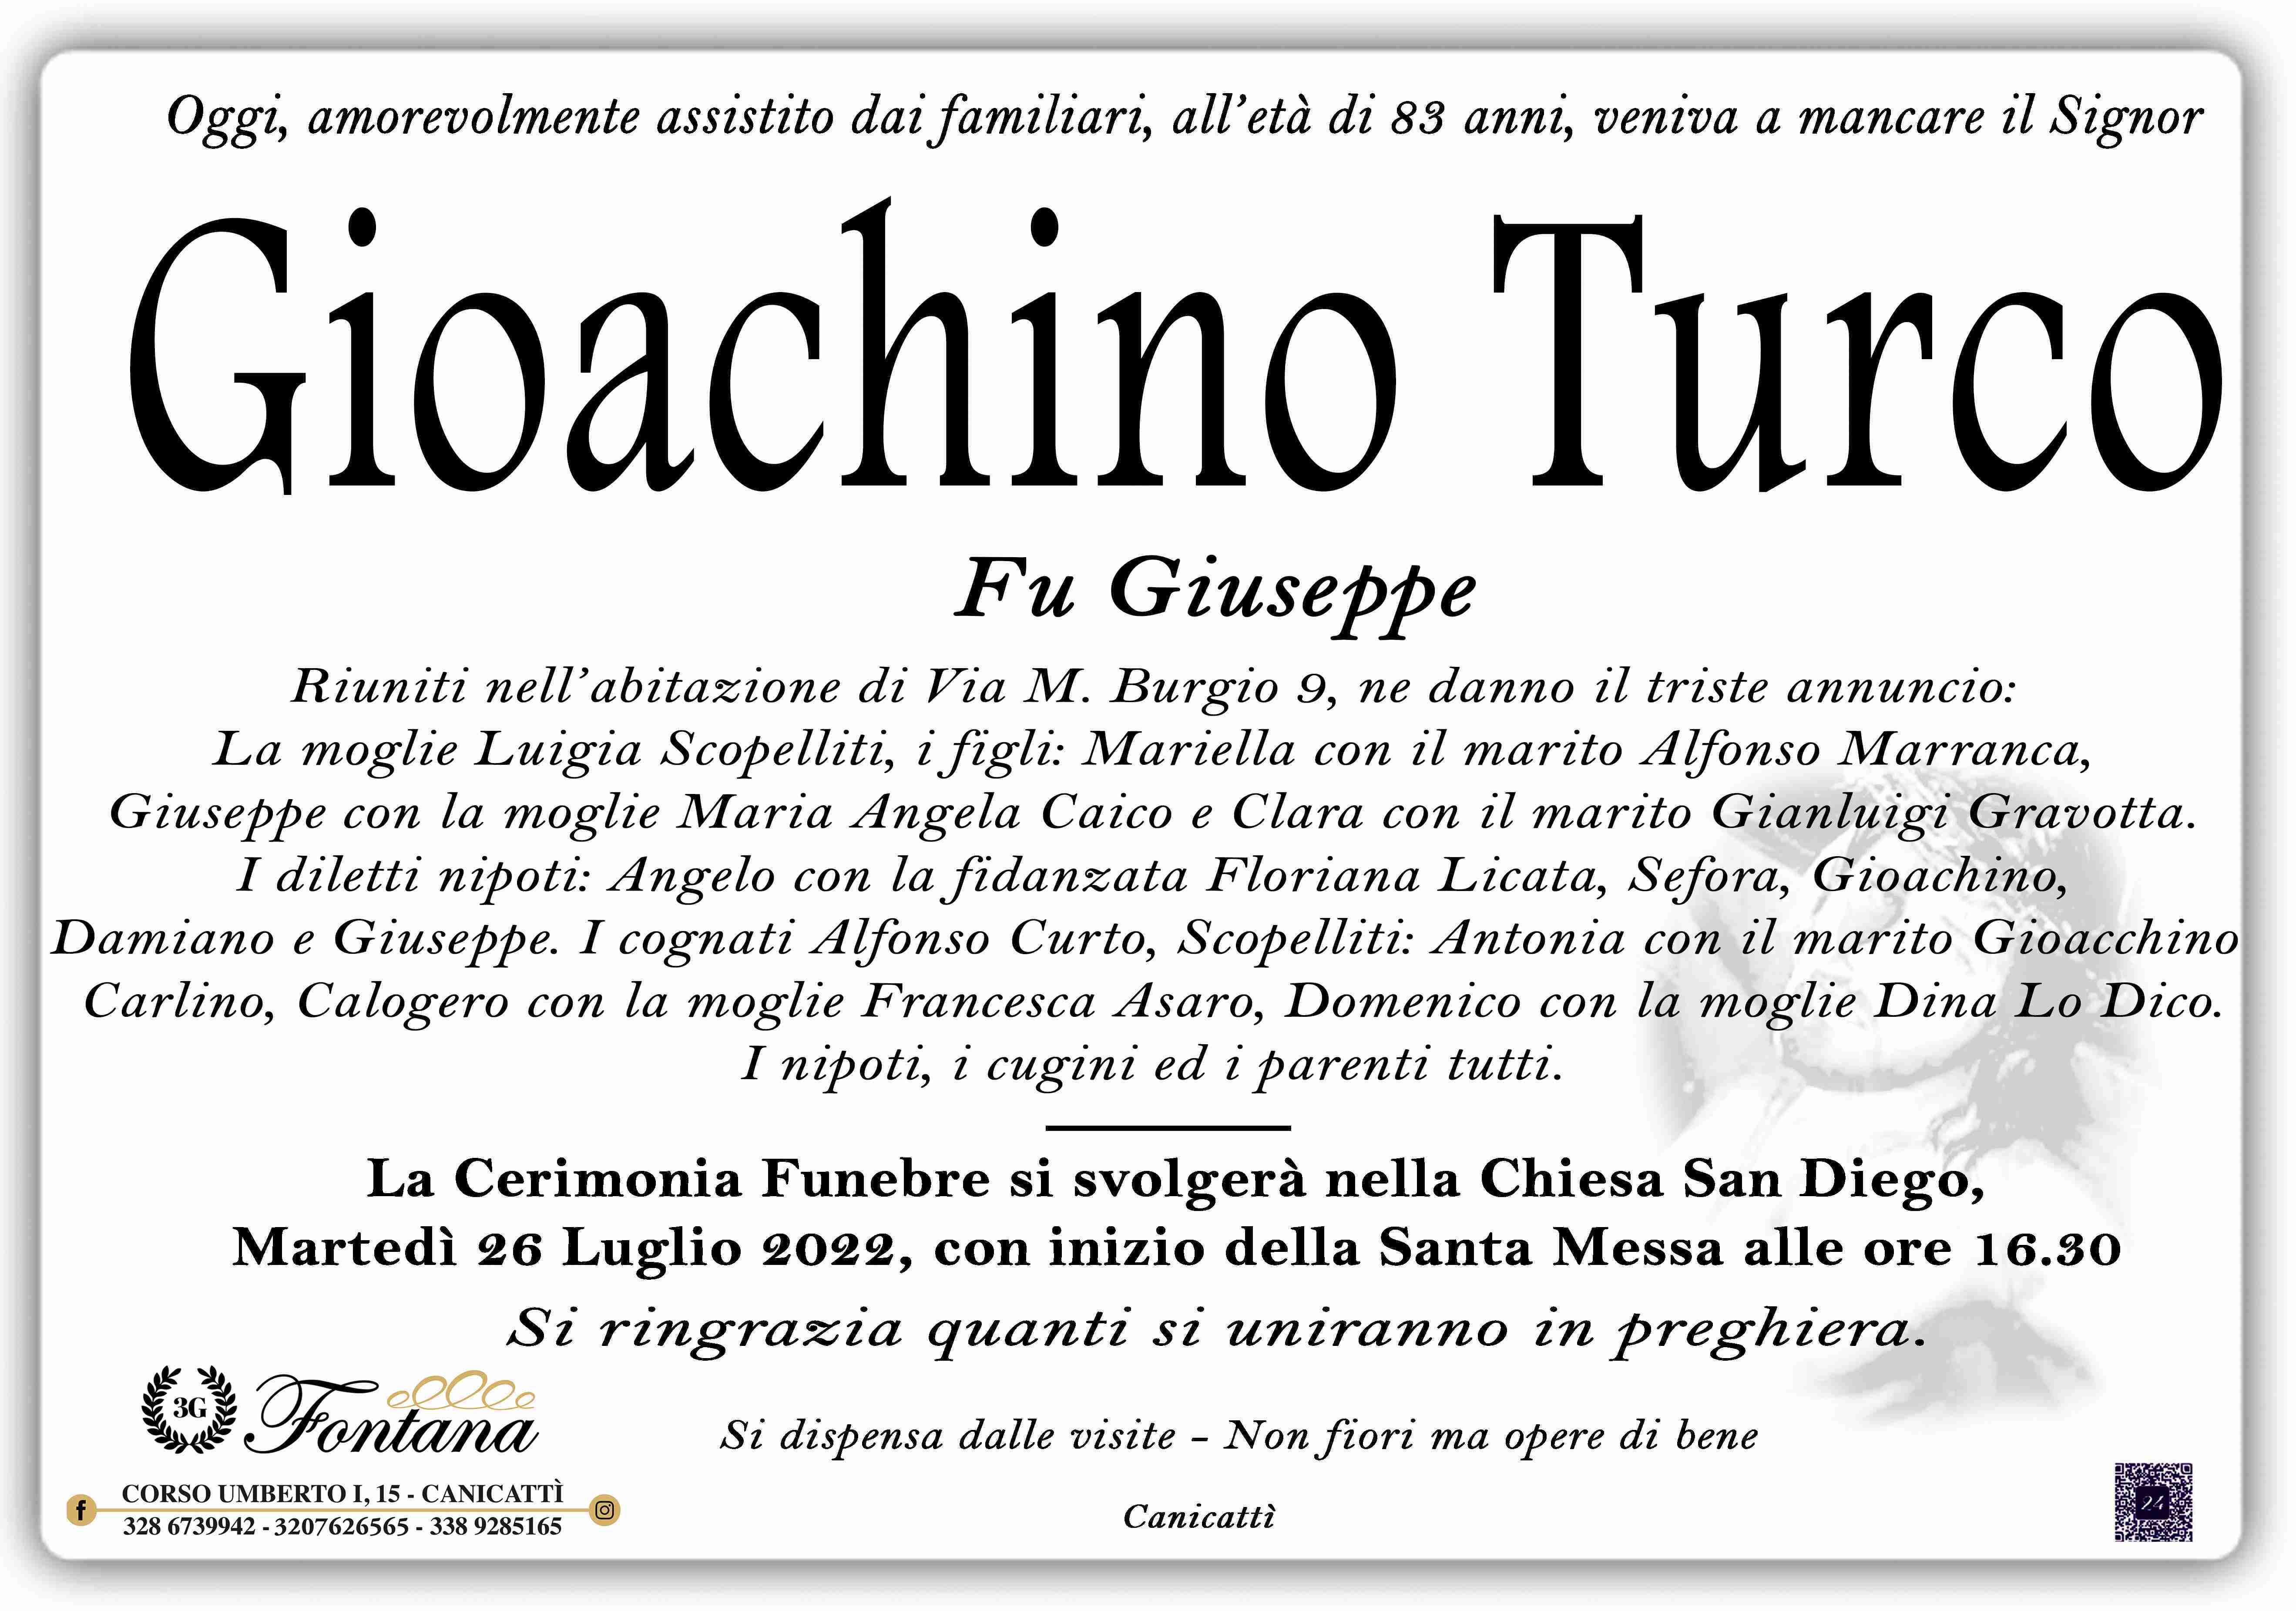 Gioachino Turco